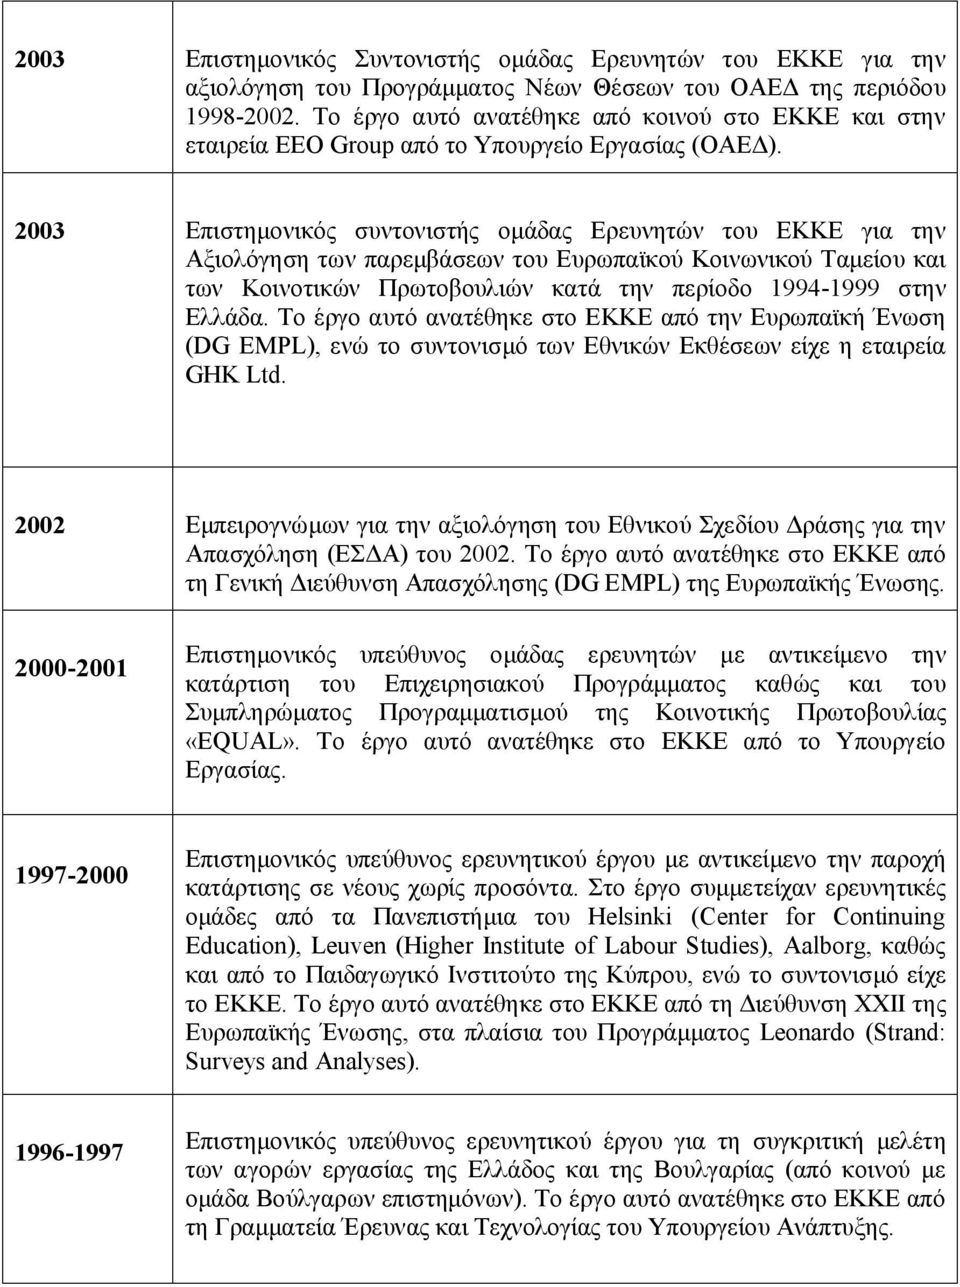 2003 Επιστημονικός συντονιστής ομάδας Ερευνητών του ΕΚΚΕ για την Αξιολόγηση των παρεμβάσεων του Ευρωπαϊκού Κοινωνικού Ταμείου και των Κοινοτικών Πρωτοβουλιών κατά την περίοδο 1994-1999 στην Ελλάδα.